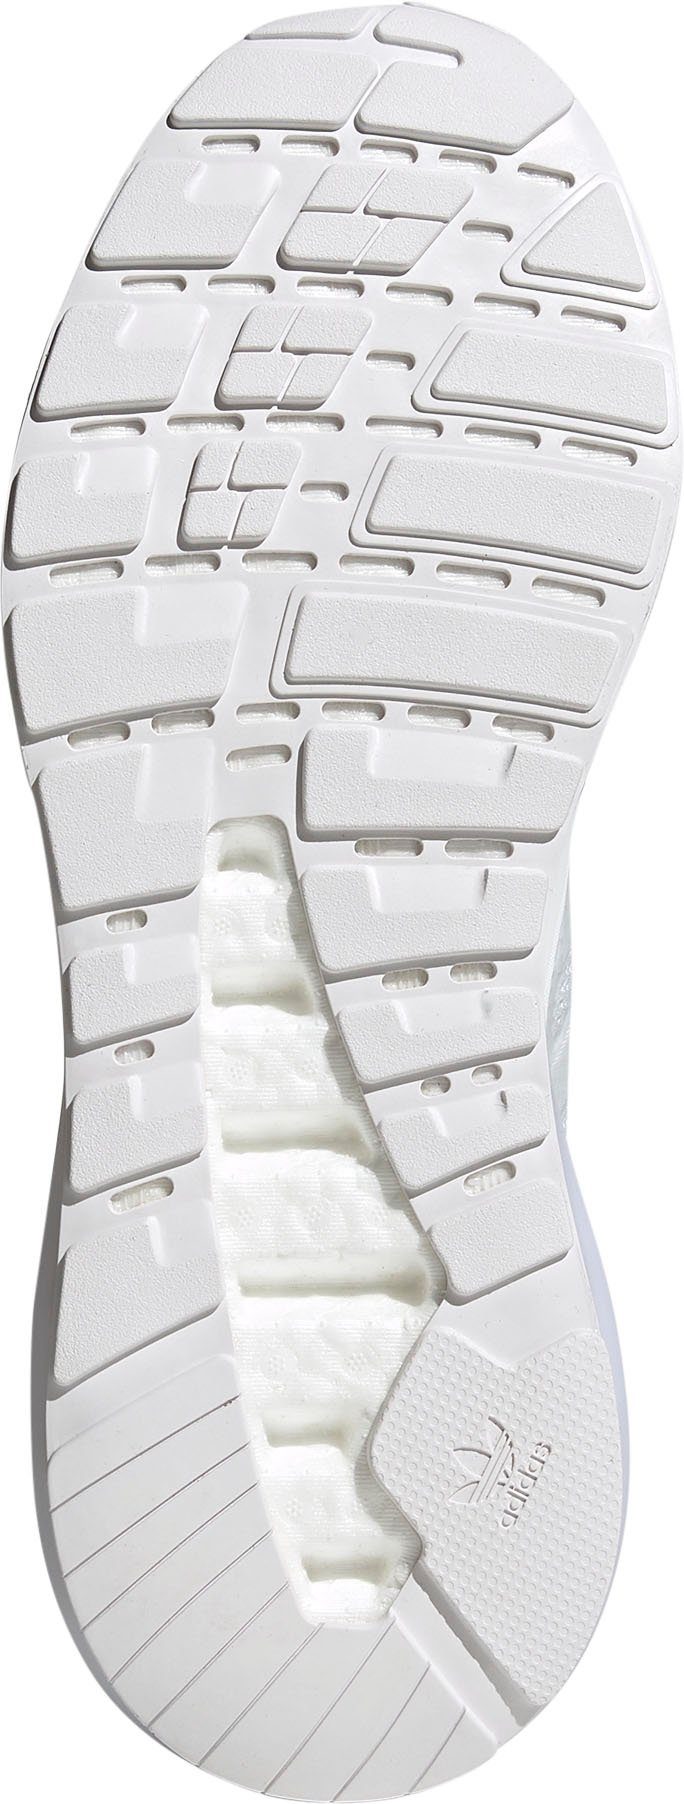 Sneaker ZX Originals 2.0 weiß BOOST 2K adidas